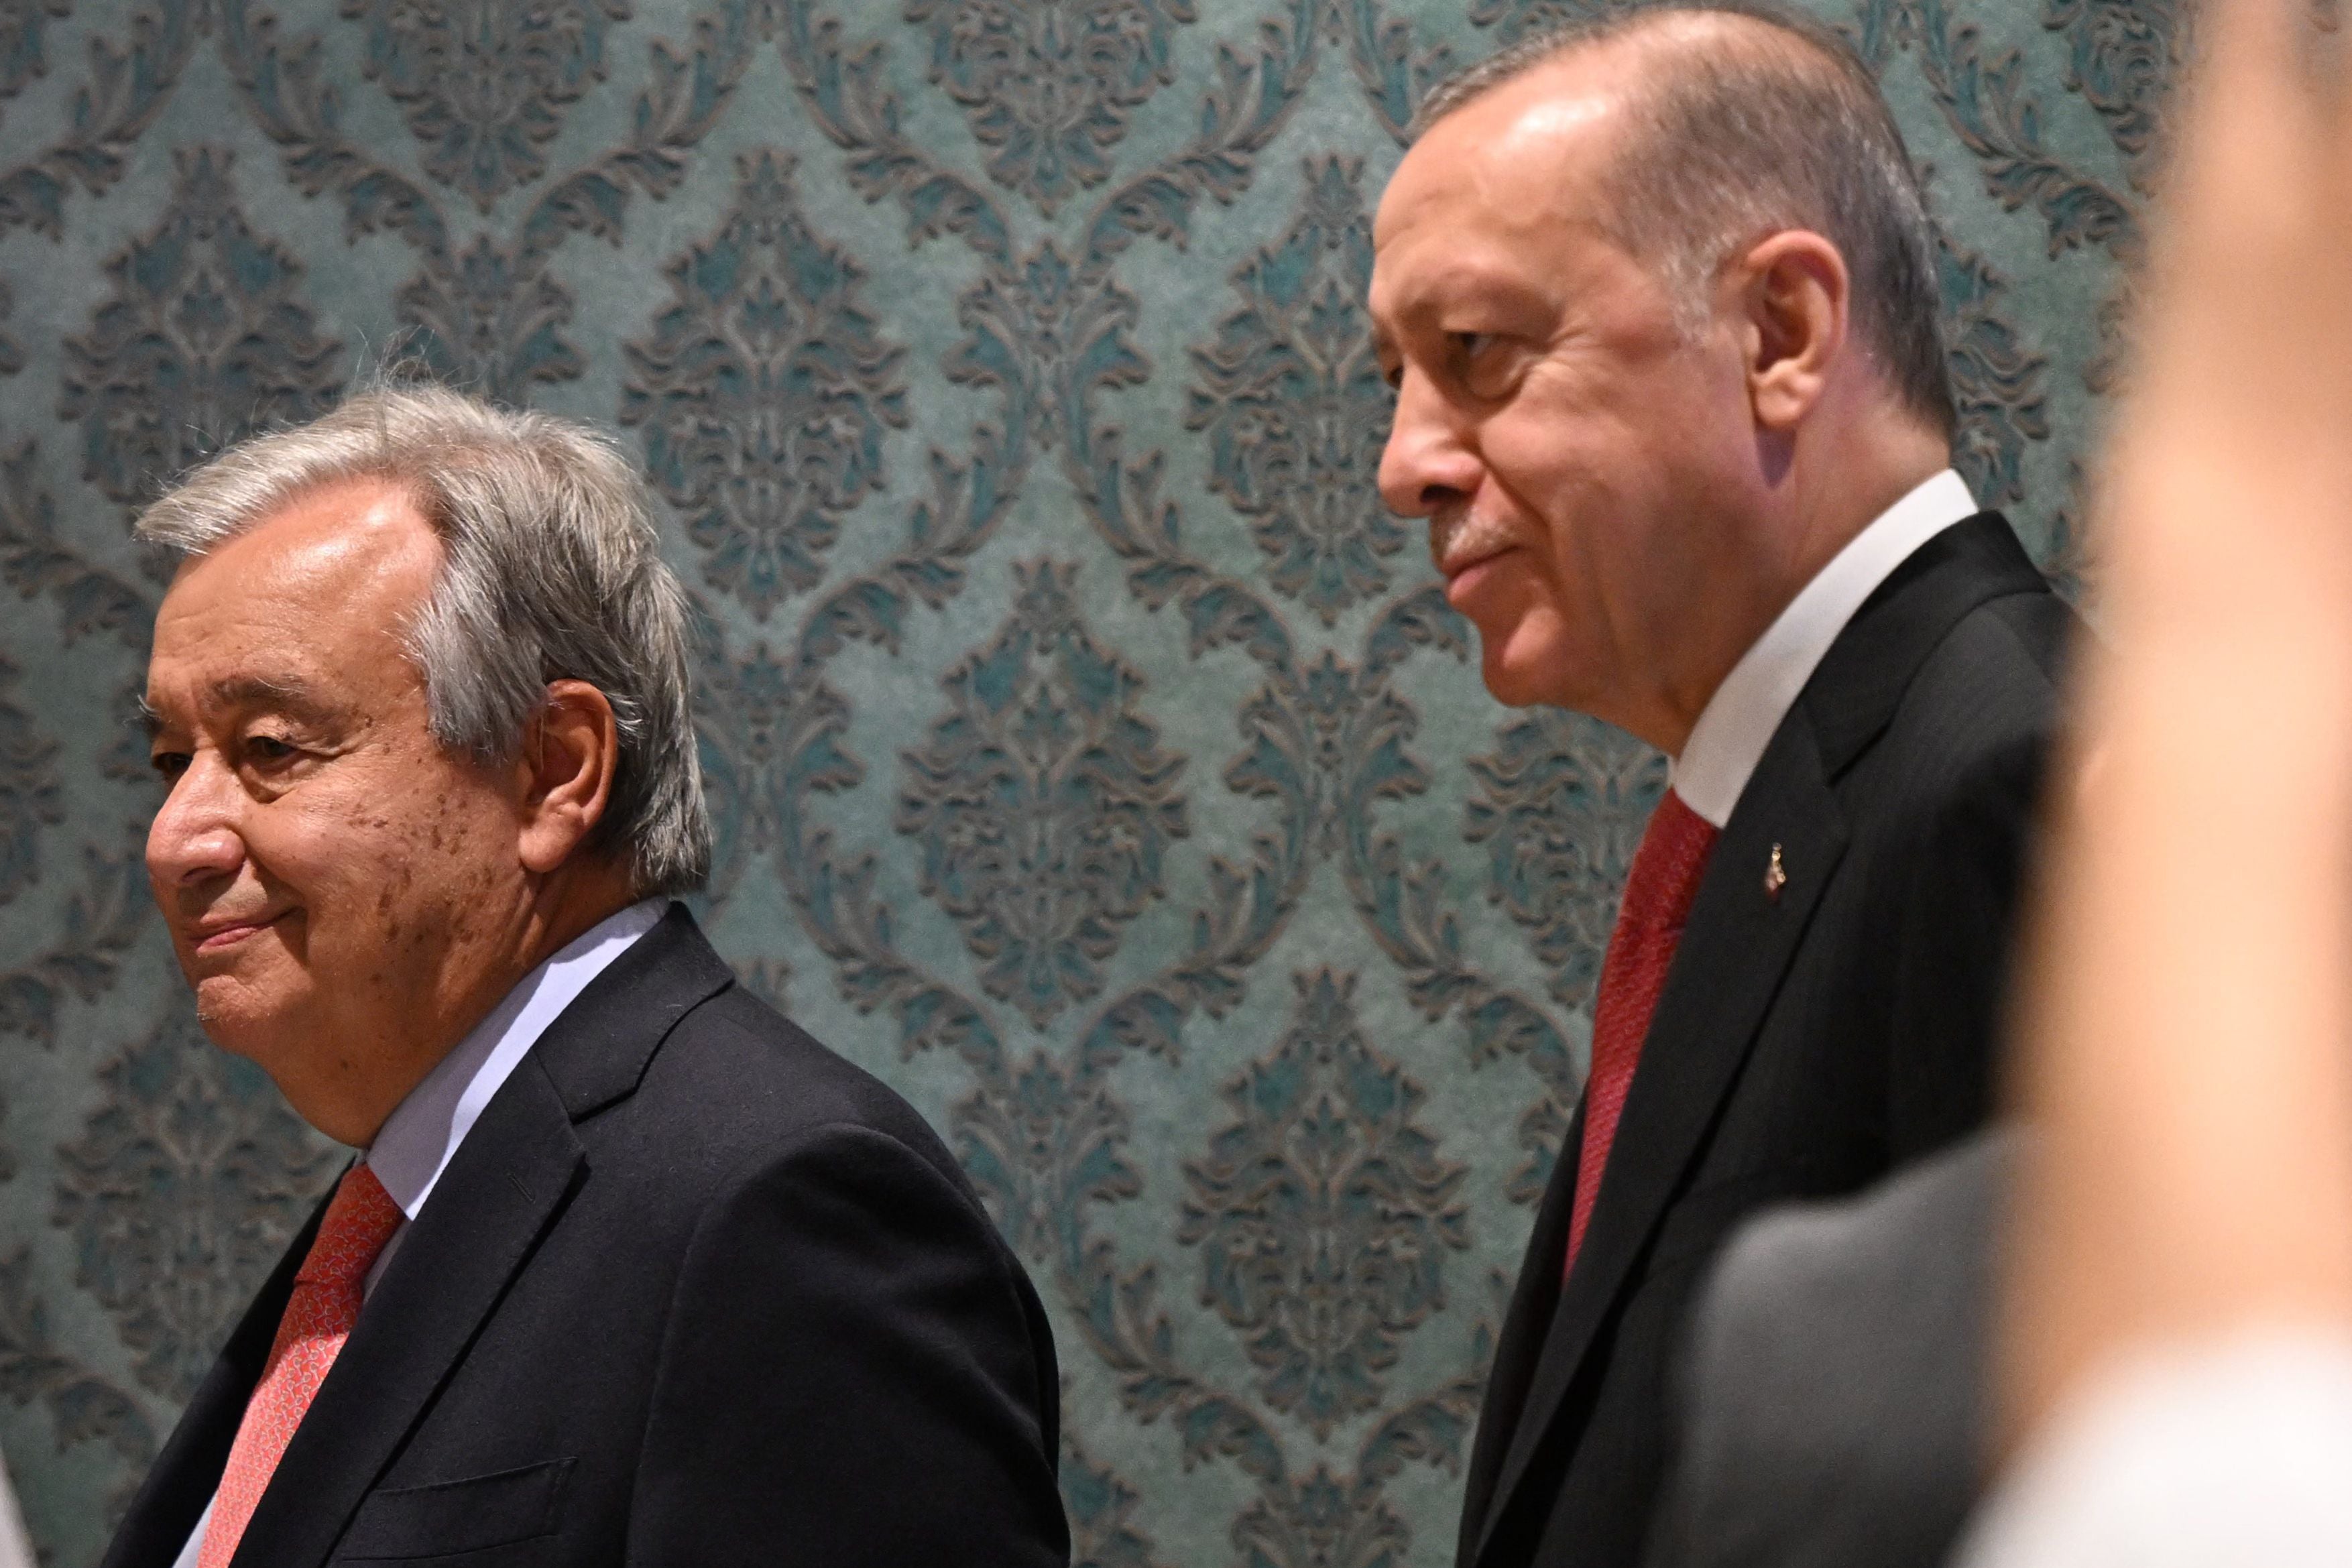 UN secretary-general Antonio Guterres and Turkish president Recep Tayyip Erdogan at Friday’s grain ceremony